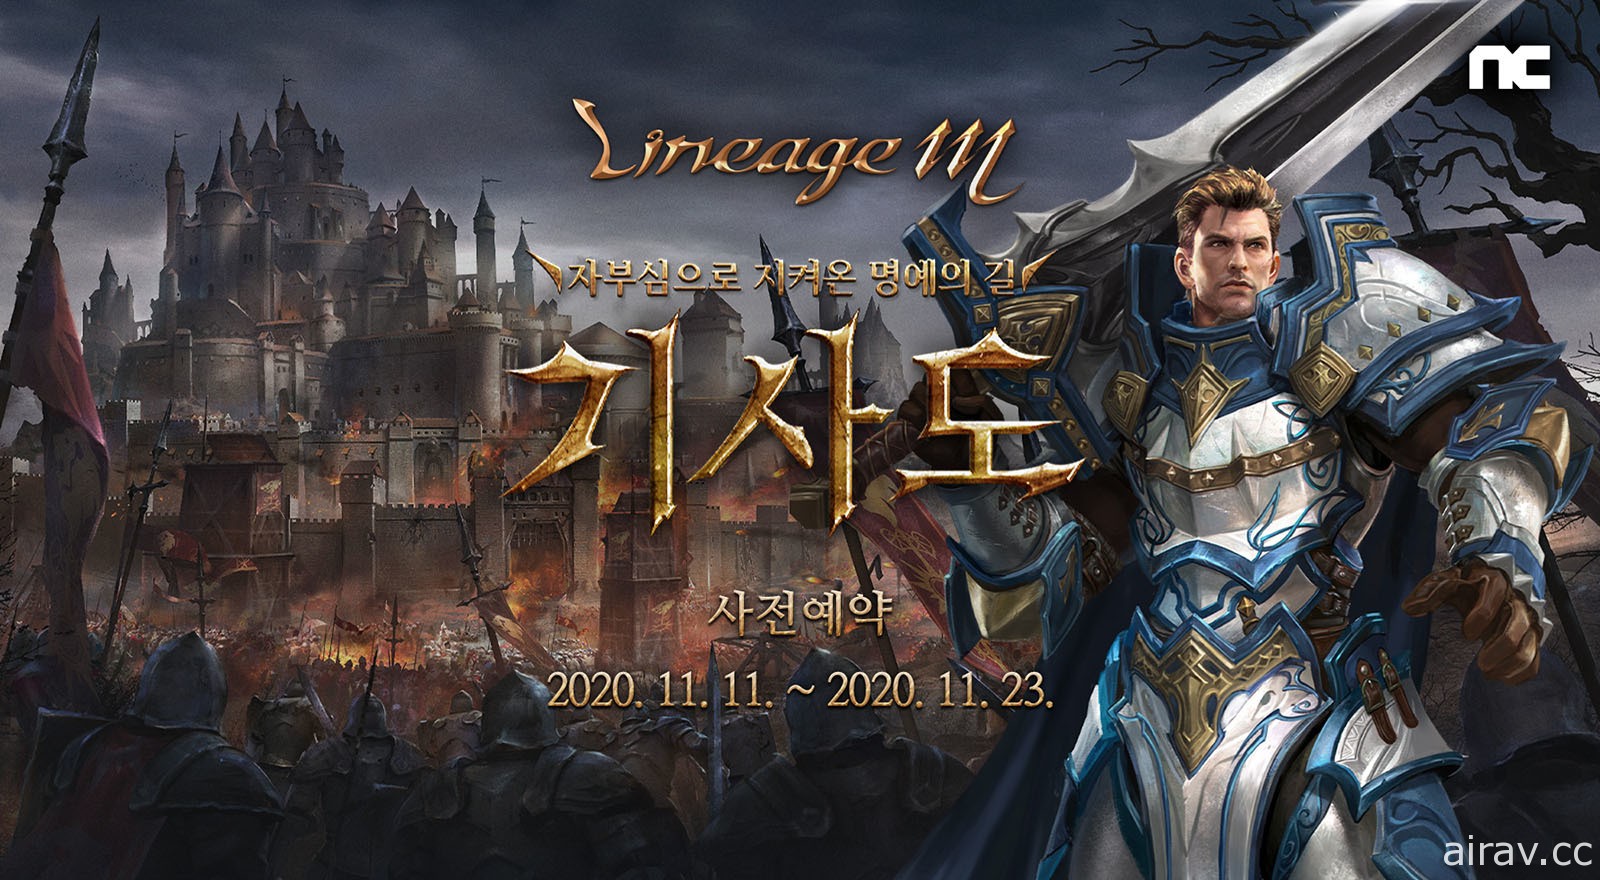 《天堂 M》韓版開放「騎士道」改版事前登錄 預計 11 月 24 日實施更新